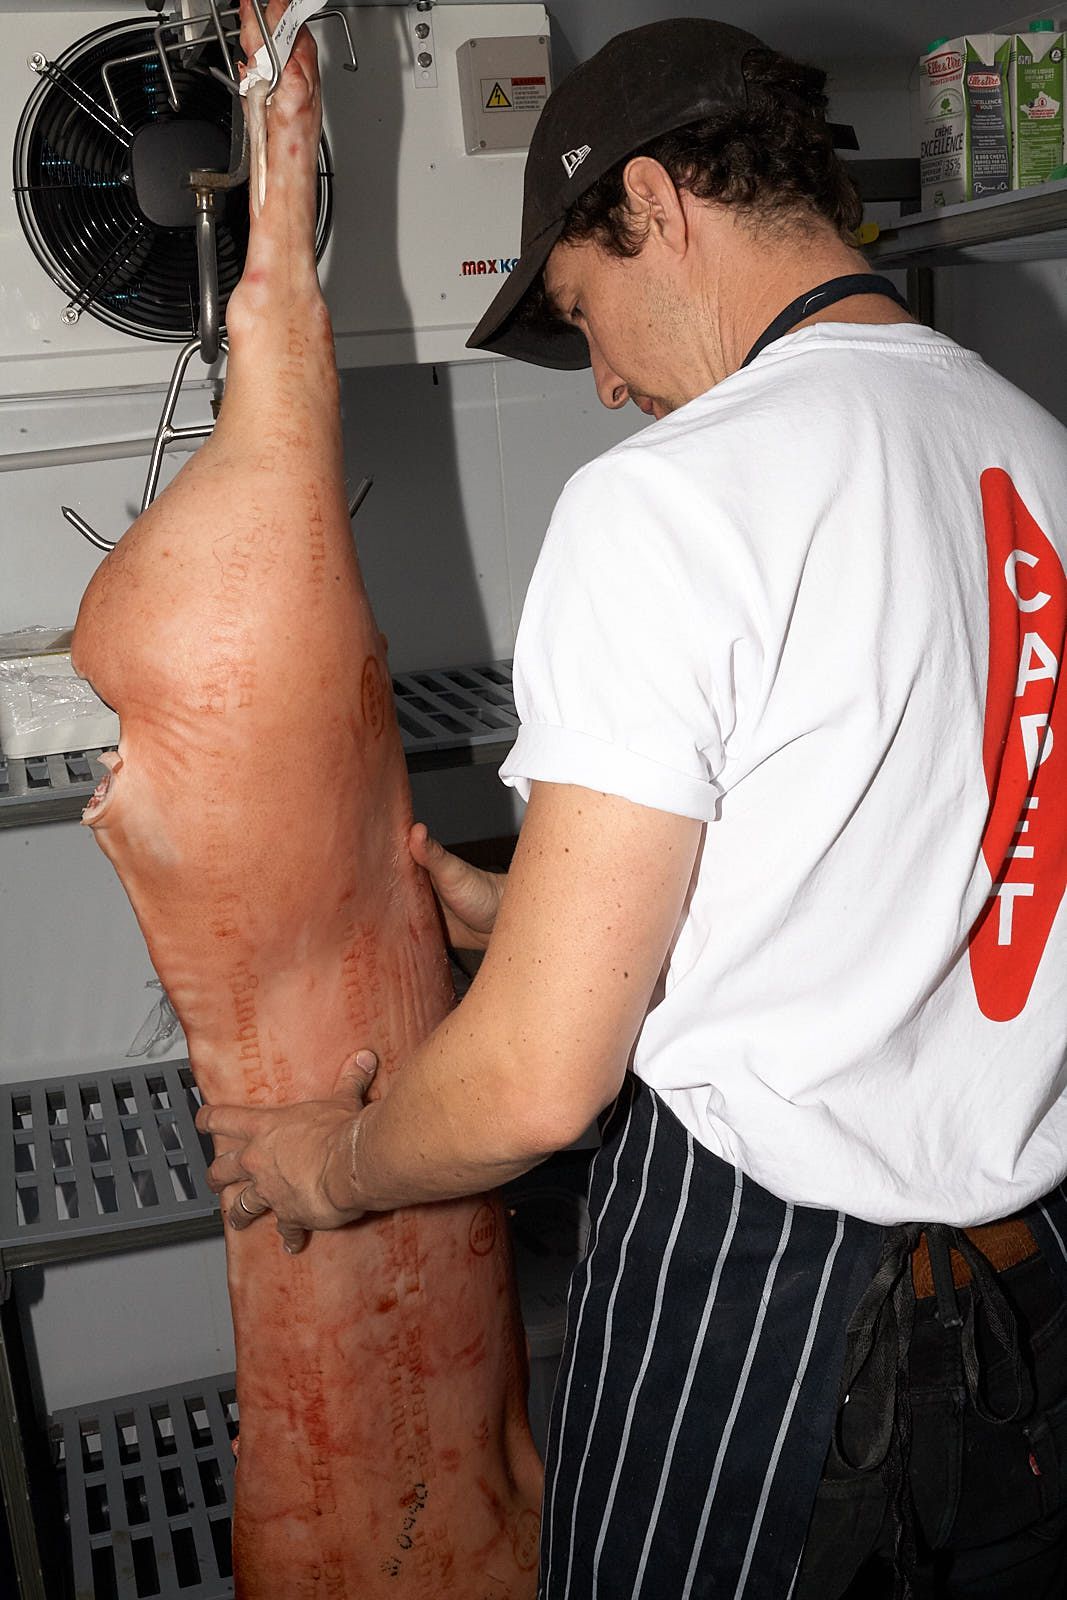 A man cradles a pig carcass.